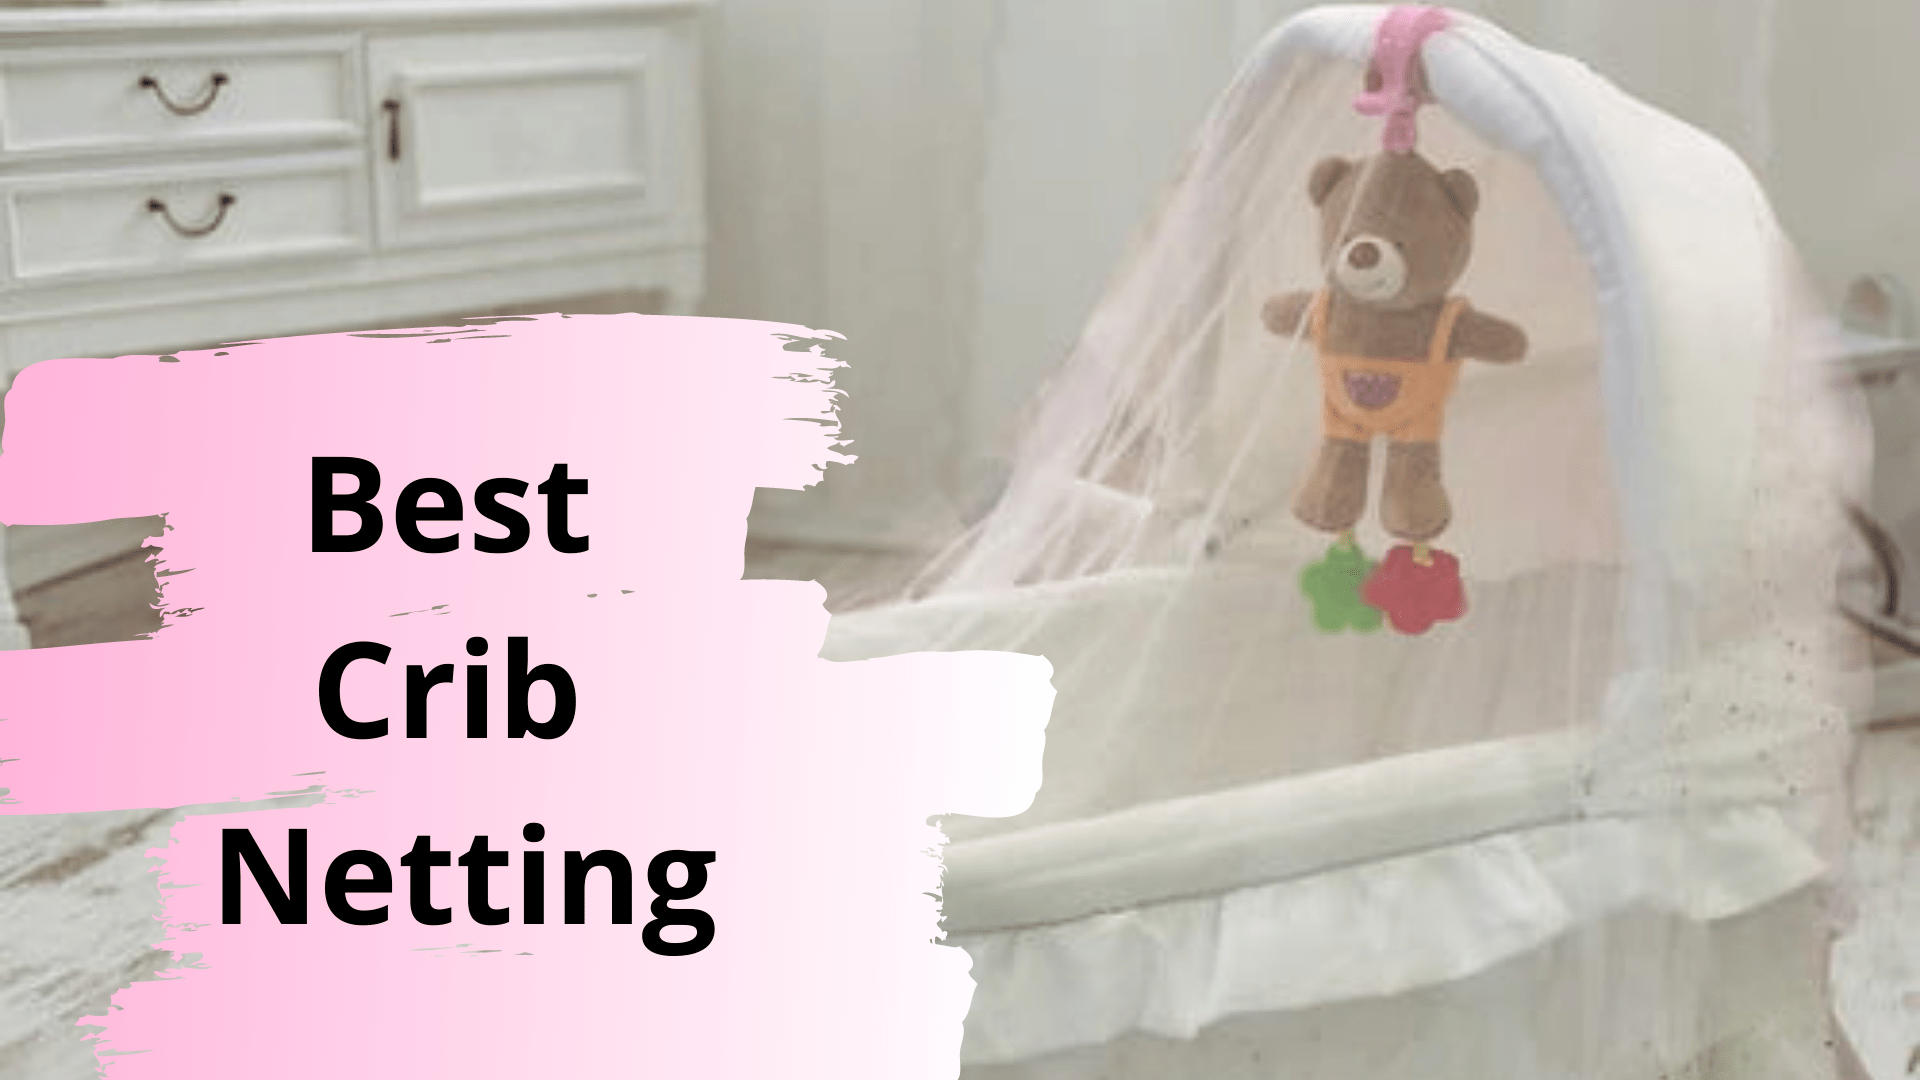 Best Crib Netting